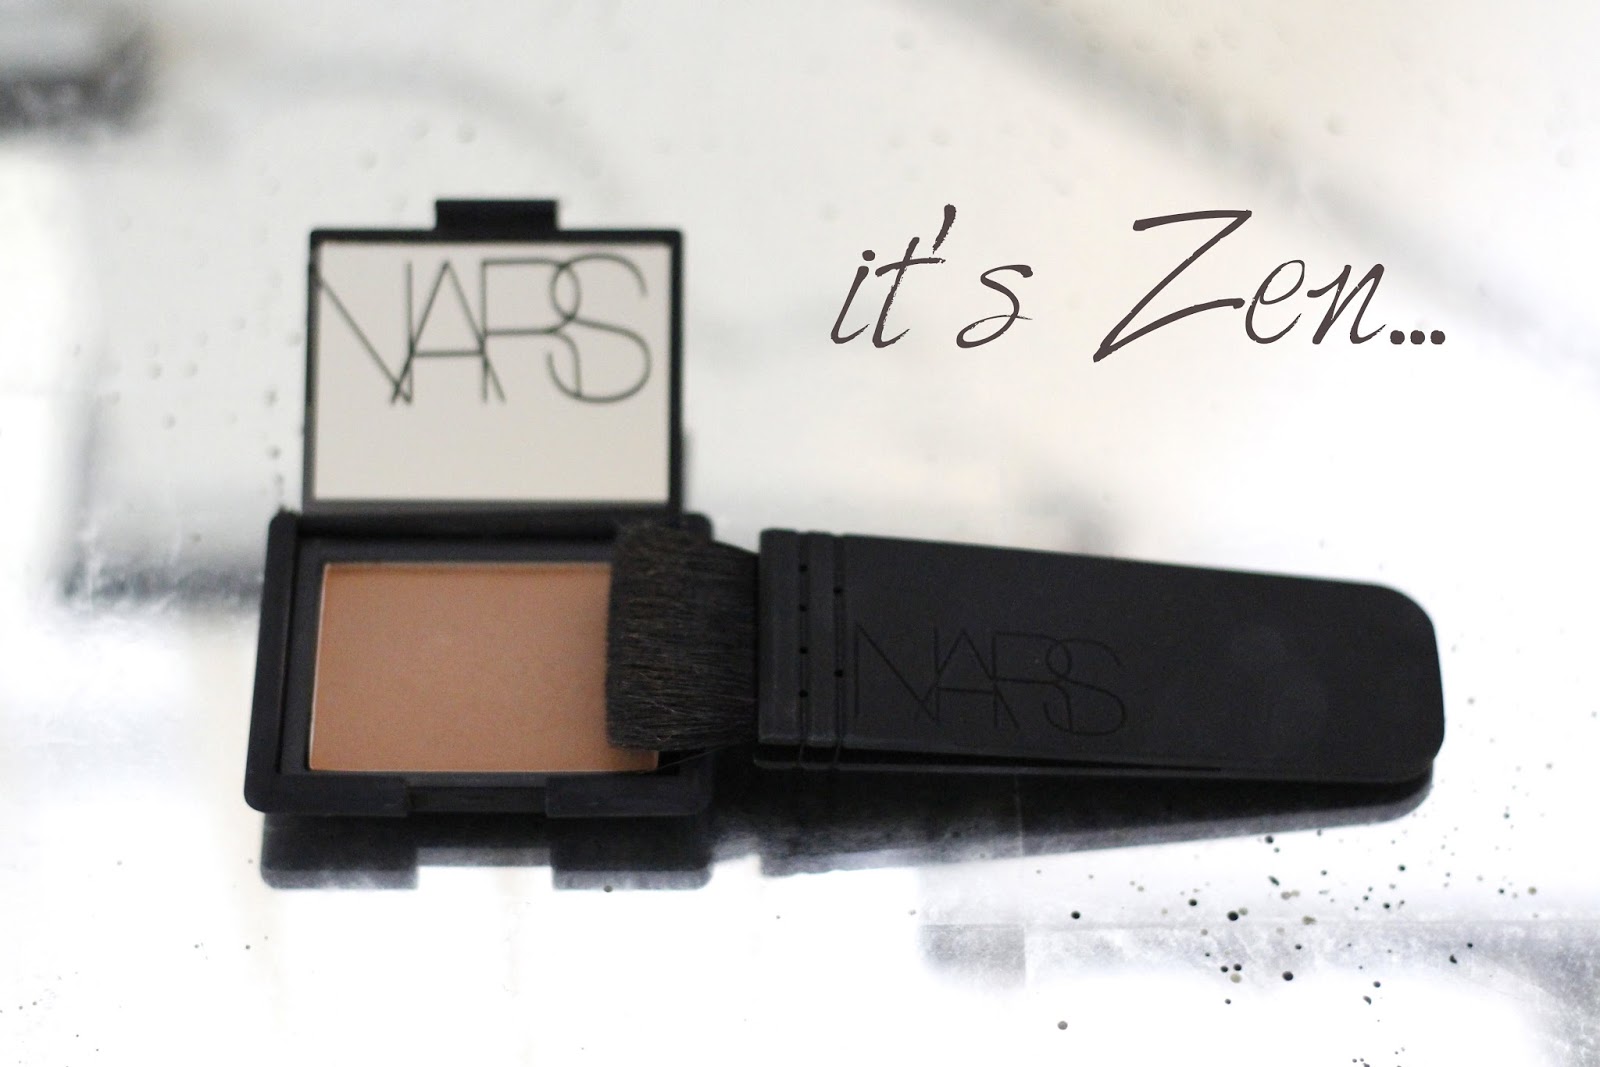 close-up of NARS blush in 'Zen' and NARS Artisan Kabuki Contour brush